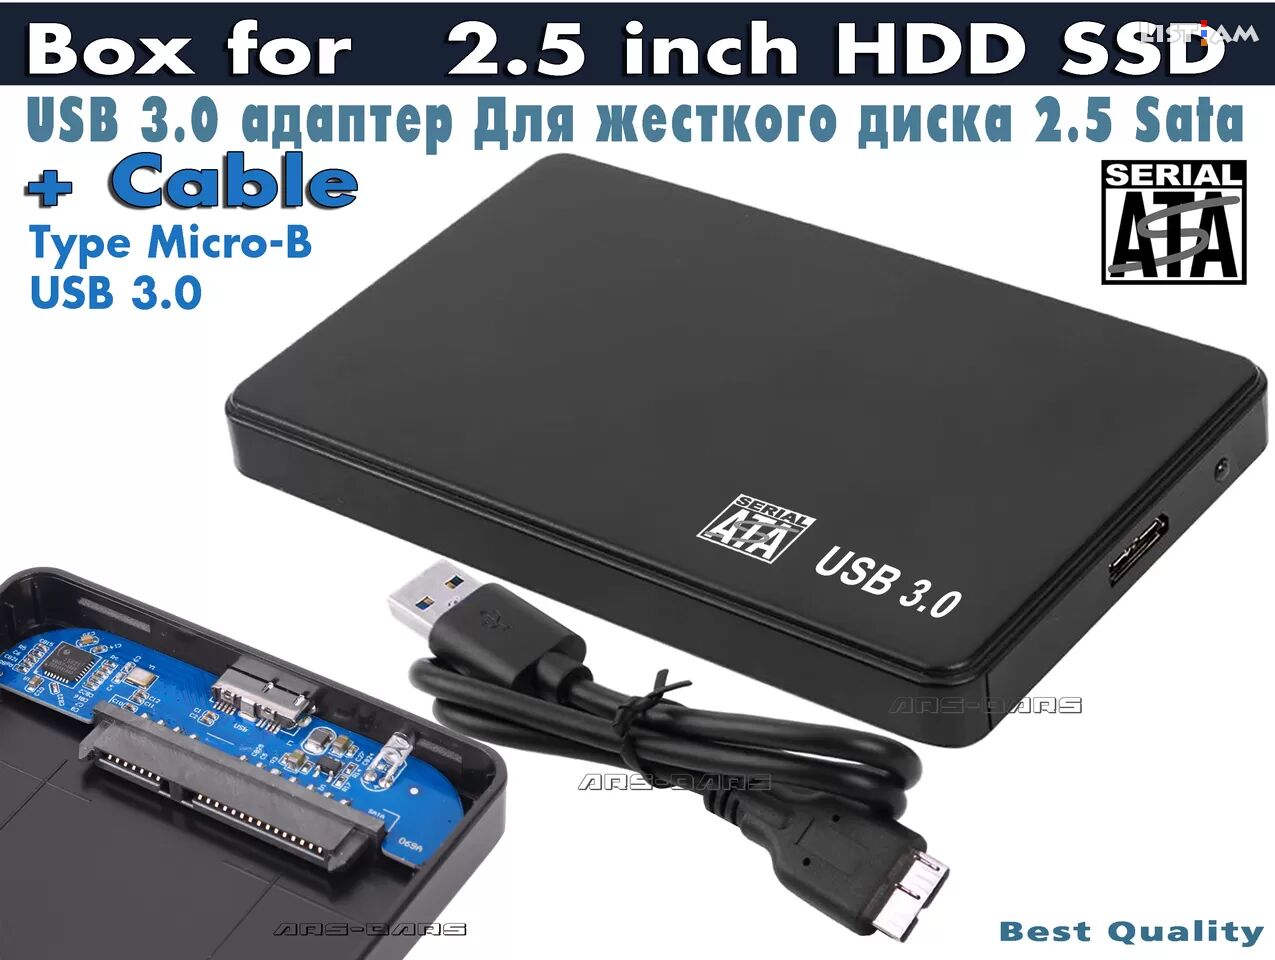 2.5 inch HDD SSD Box